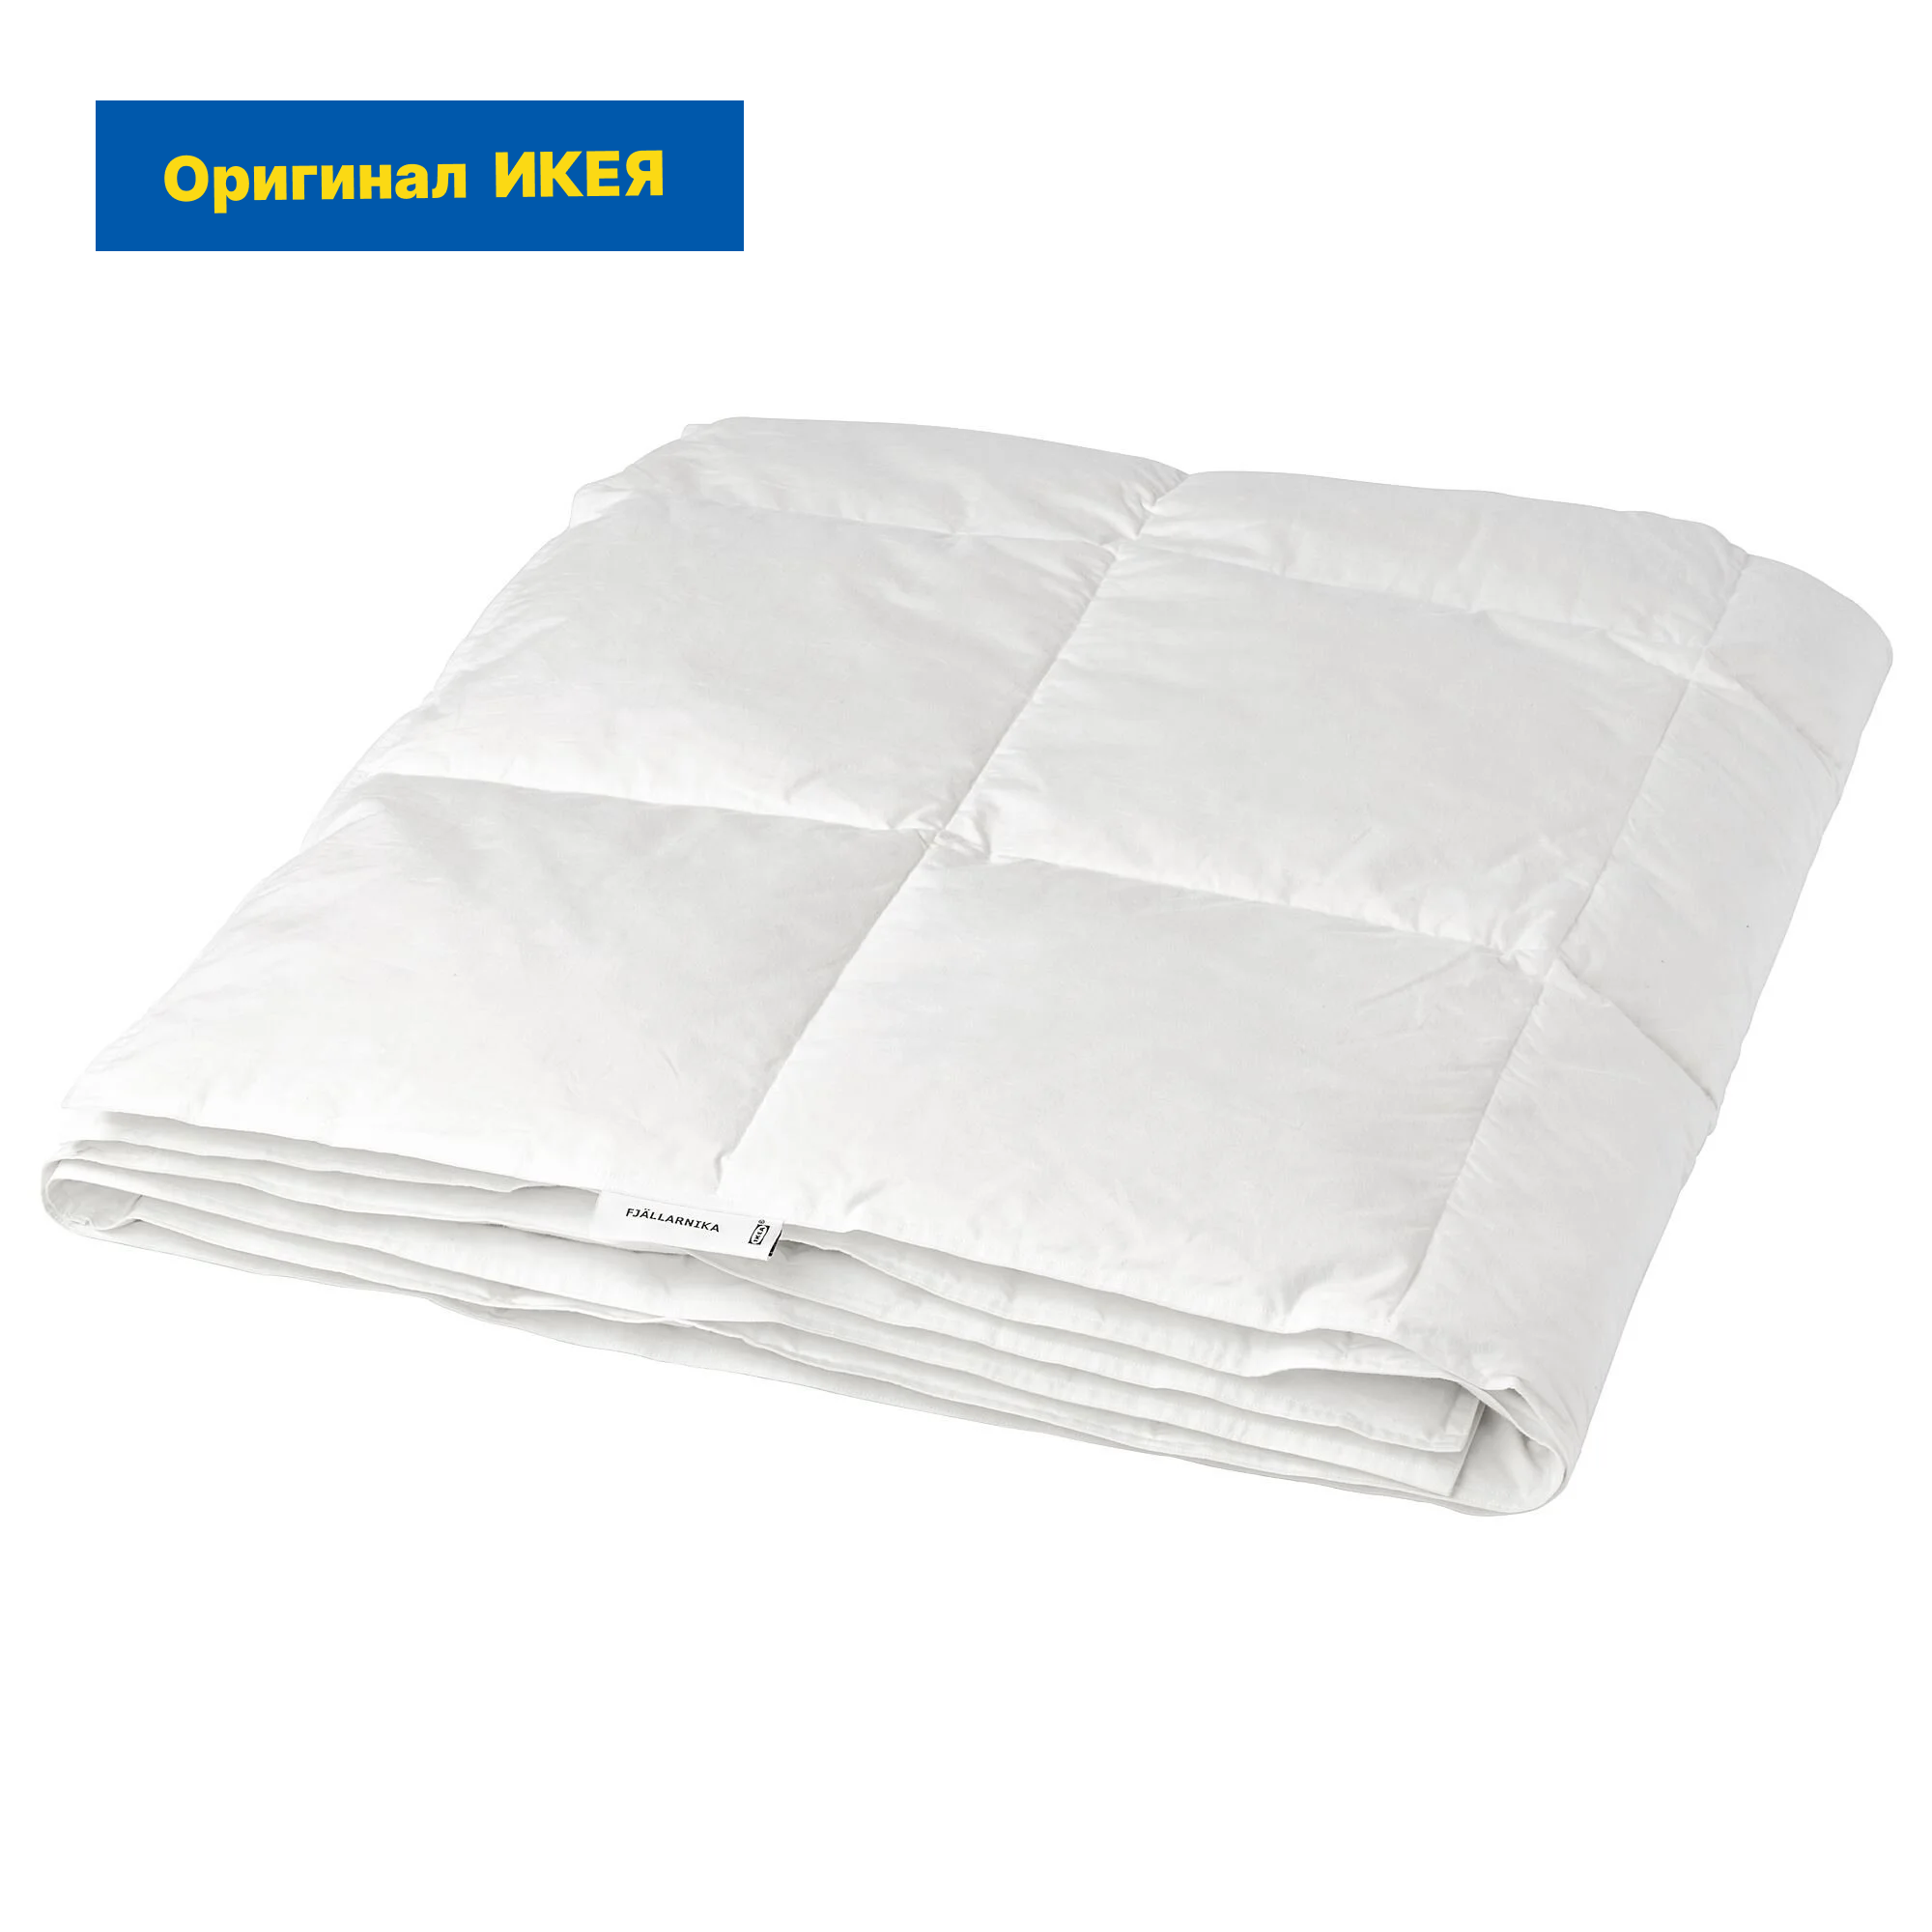 Одеяло пуховое IKEA FJALLARNIKA / икея фьелларника, 150x200 см, легкое